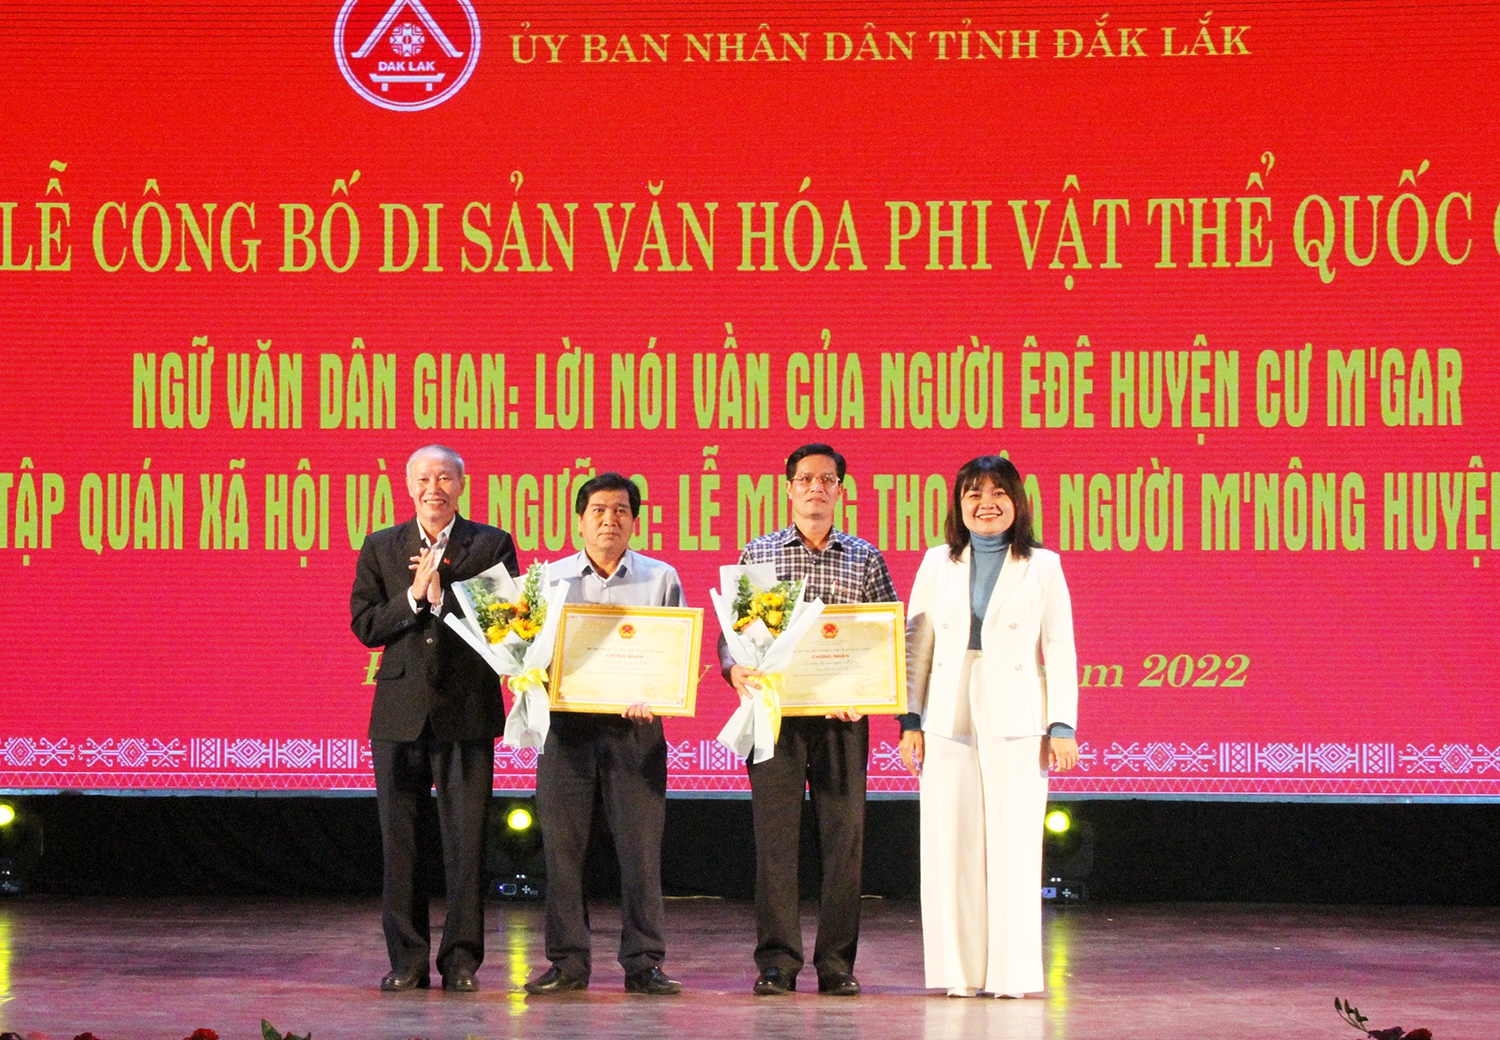 Phó Chủ tịch UBND tỉnh Đắk Lắk H’Yim Kdoh và Giám đốc Sở Văn hóa, Thể thao và Du lịch Thái Hồng Hà trao Chứng nhận Di sản văn hóa phi vật thể Quốc gia cho đại diện 2 huyện